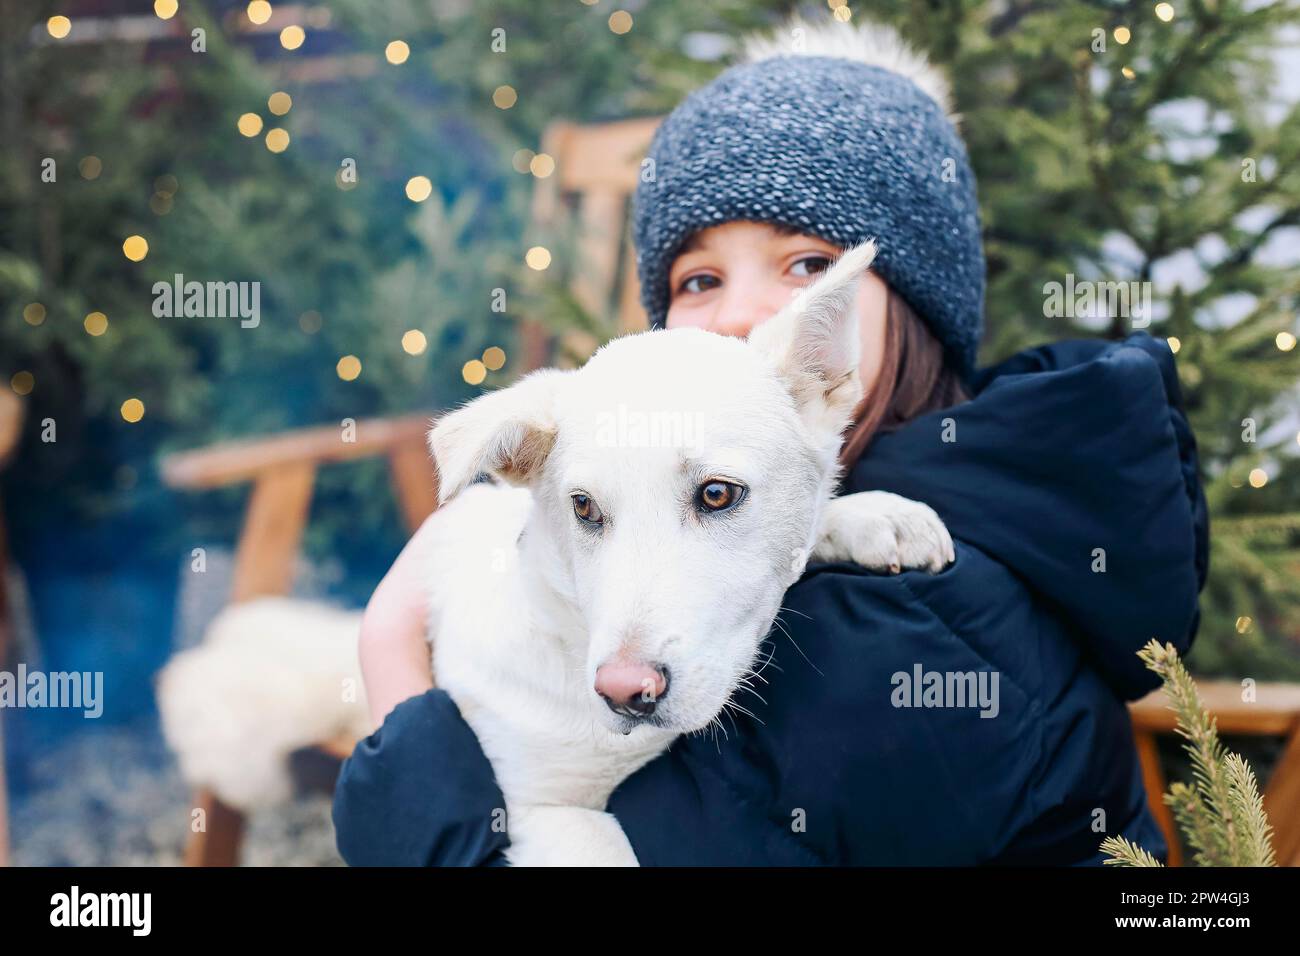 Sorridente ragazza adolescente in abiti caldi tenendo carino cucciolo bianco in braccia, mentre seduto in cortile surrauded con alberi di conifere, il cane abbracciante e. Foto Stock